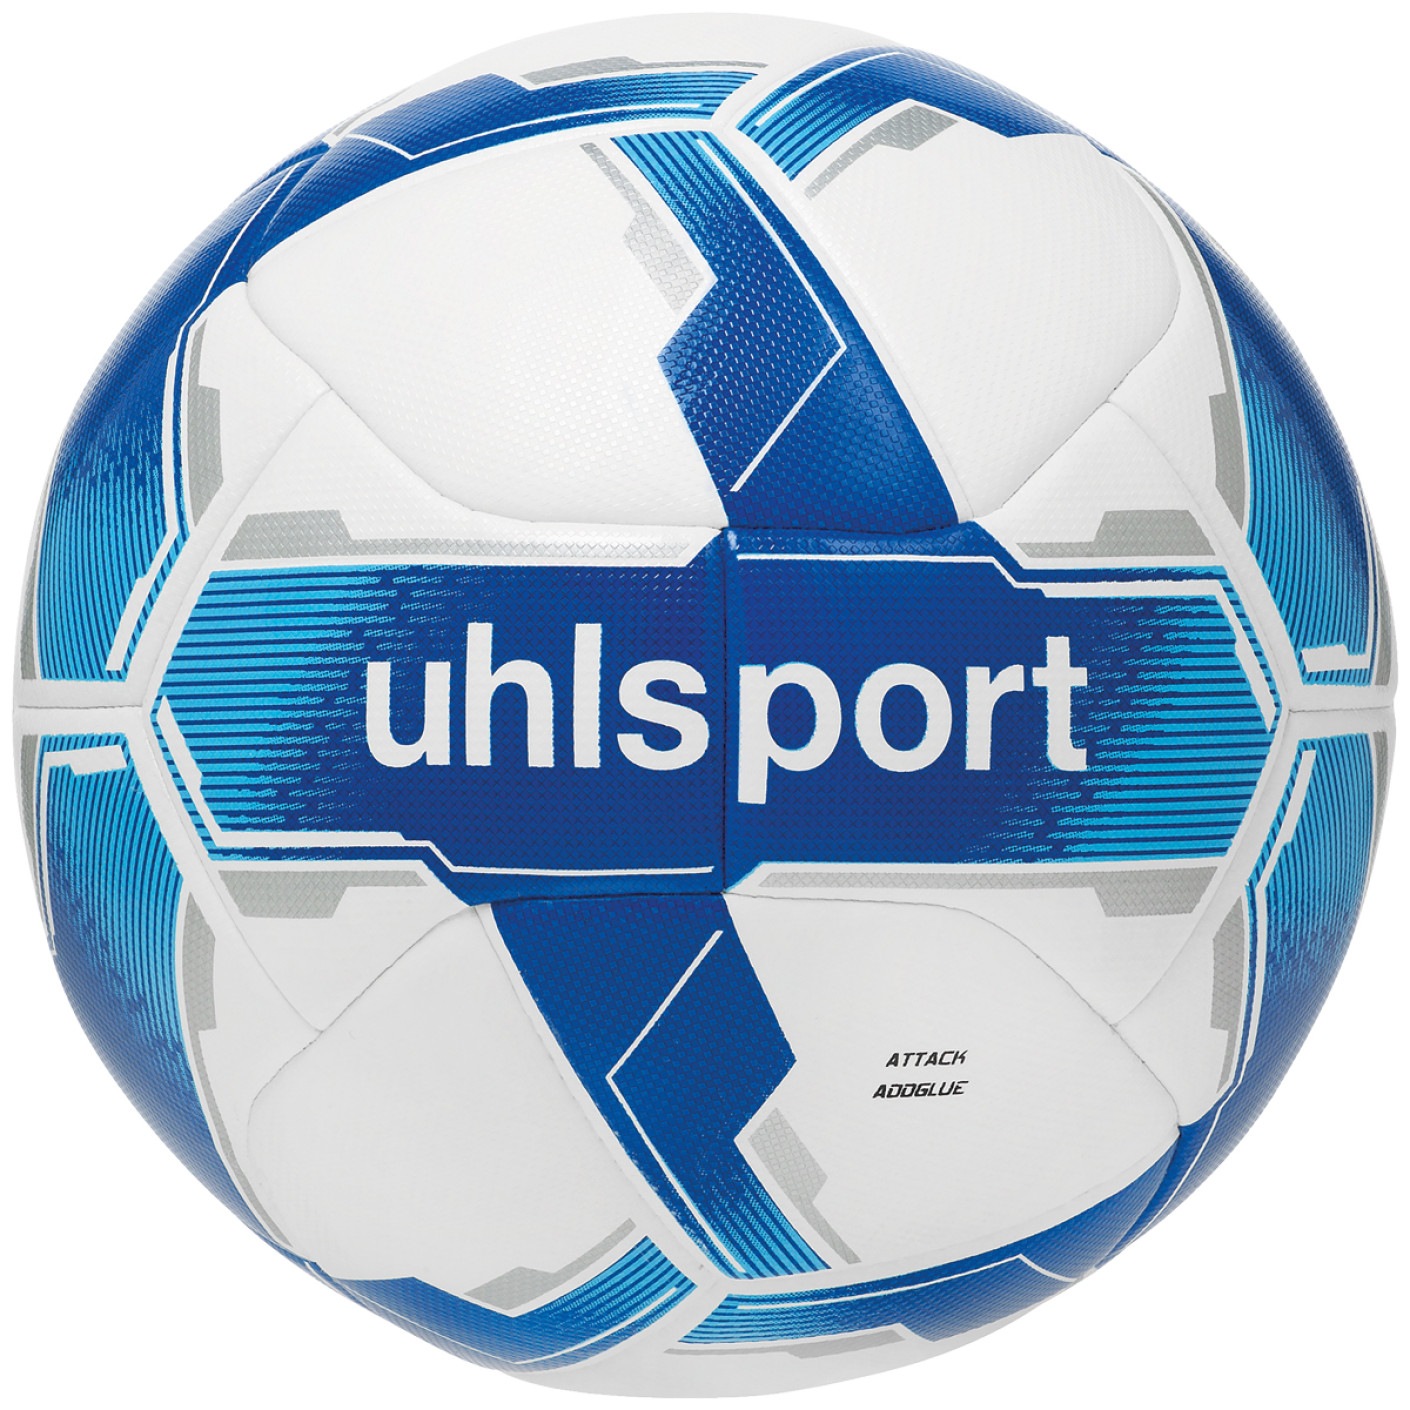 Uhlsport Attack Addglue Ballon de Foot Taille 5 Blanc Bleu